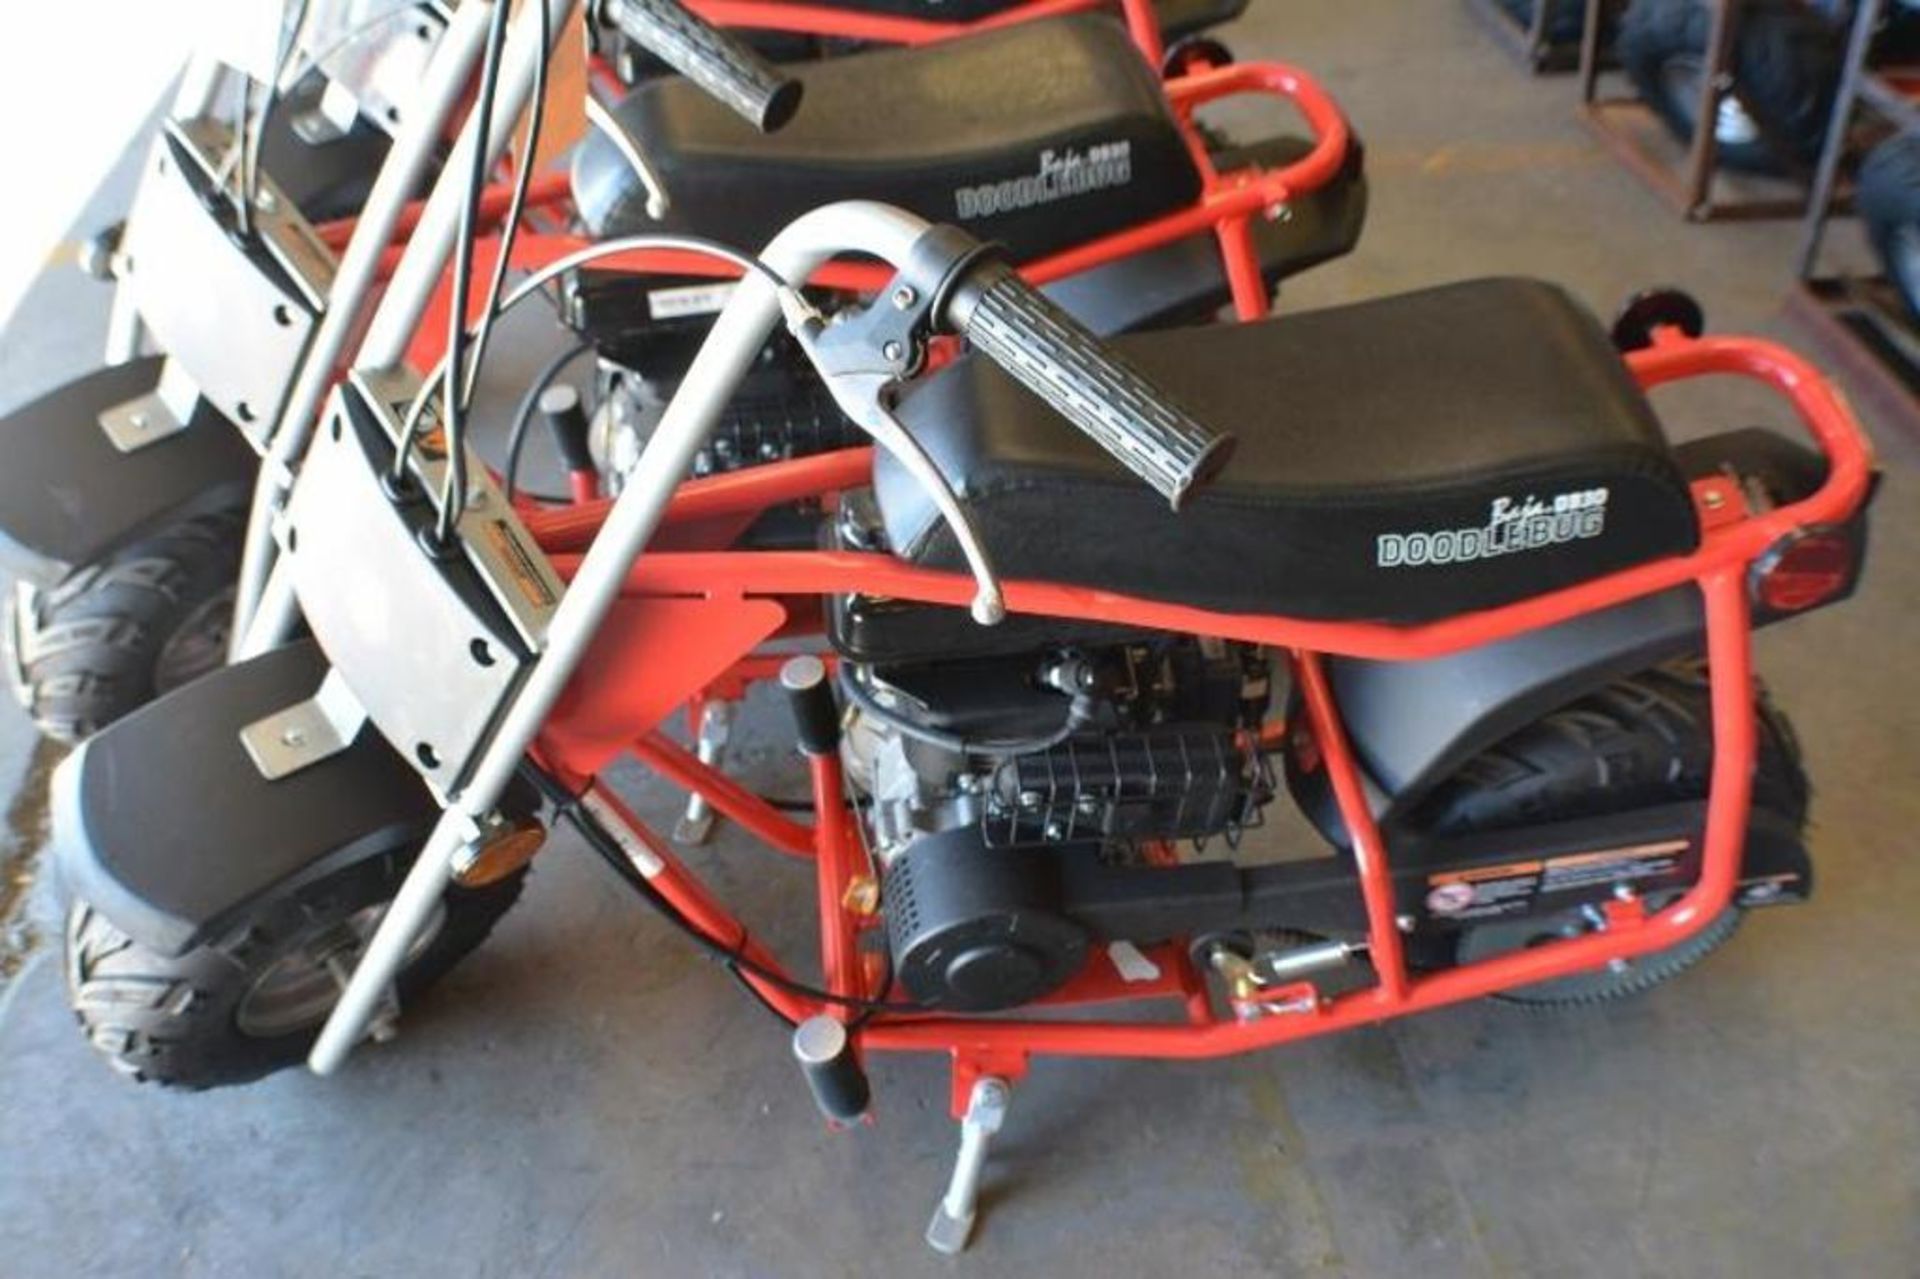 Mini Bike 97cc 4 Stroke Red/ Black Color - Image 2 of 6